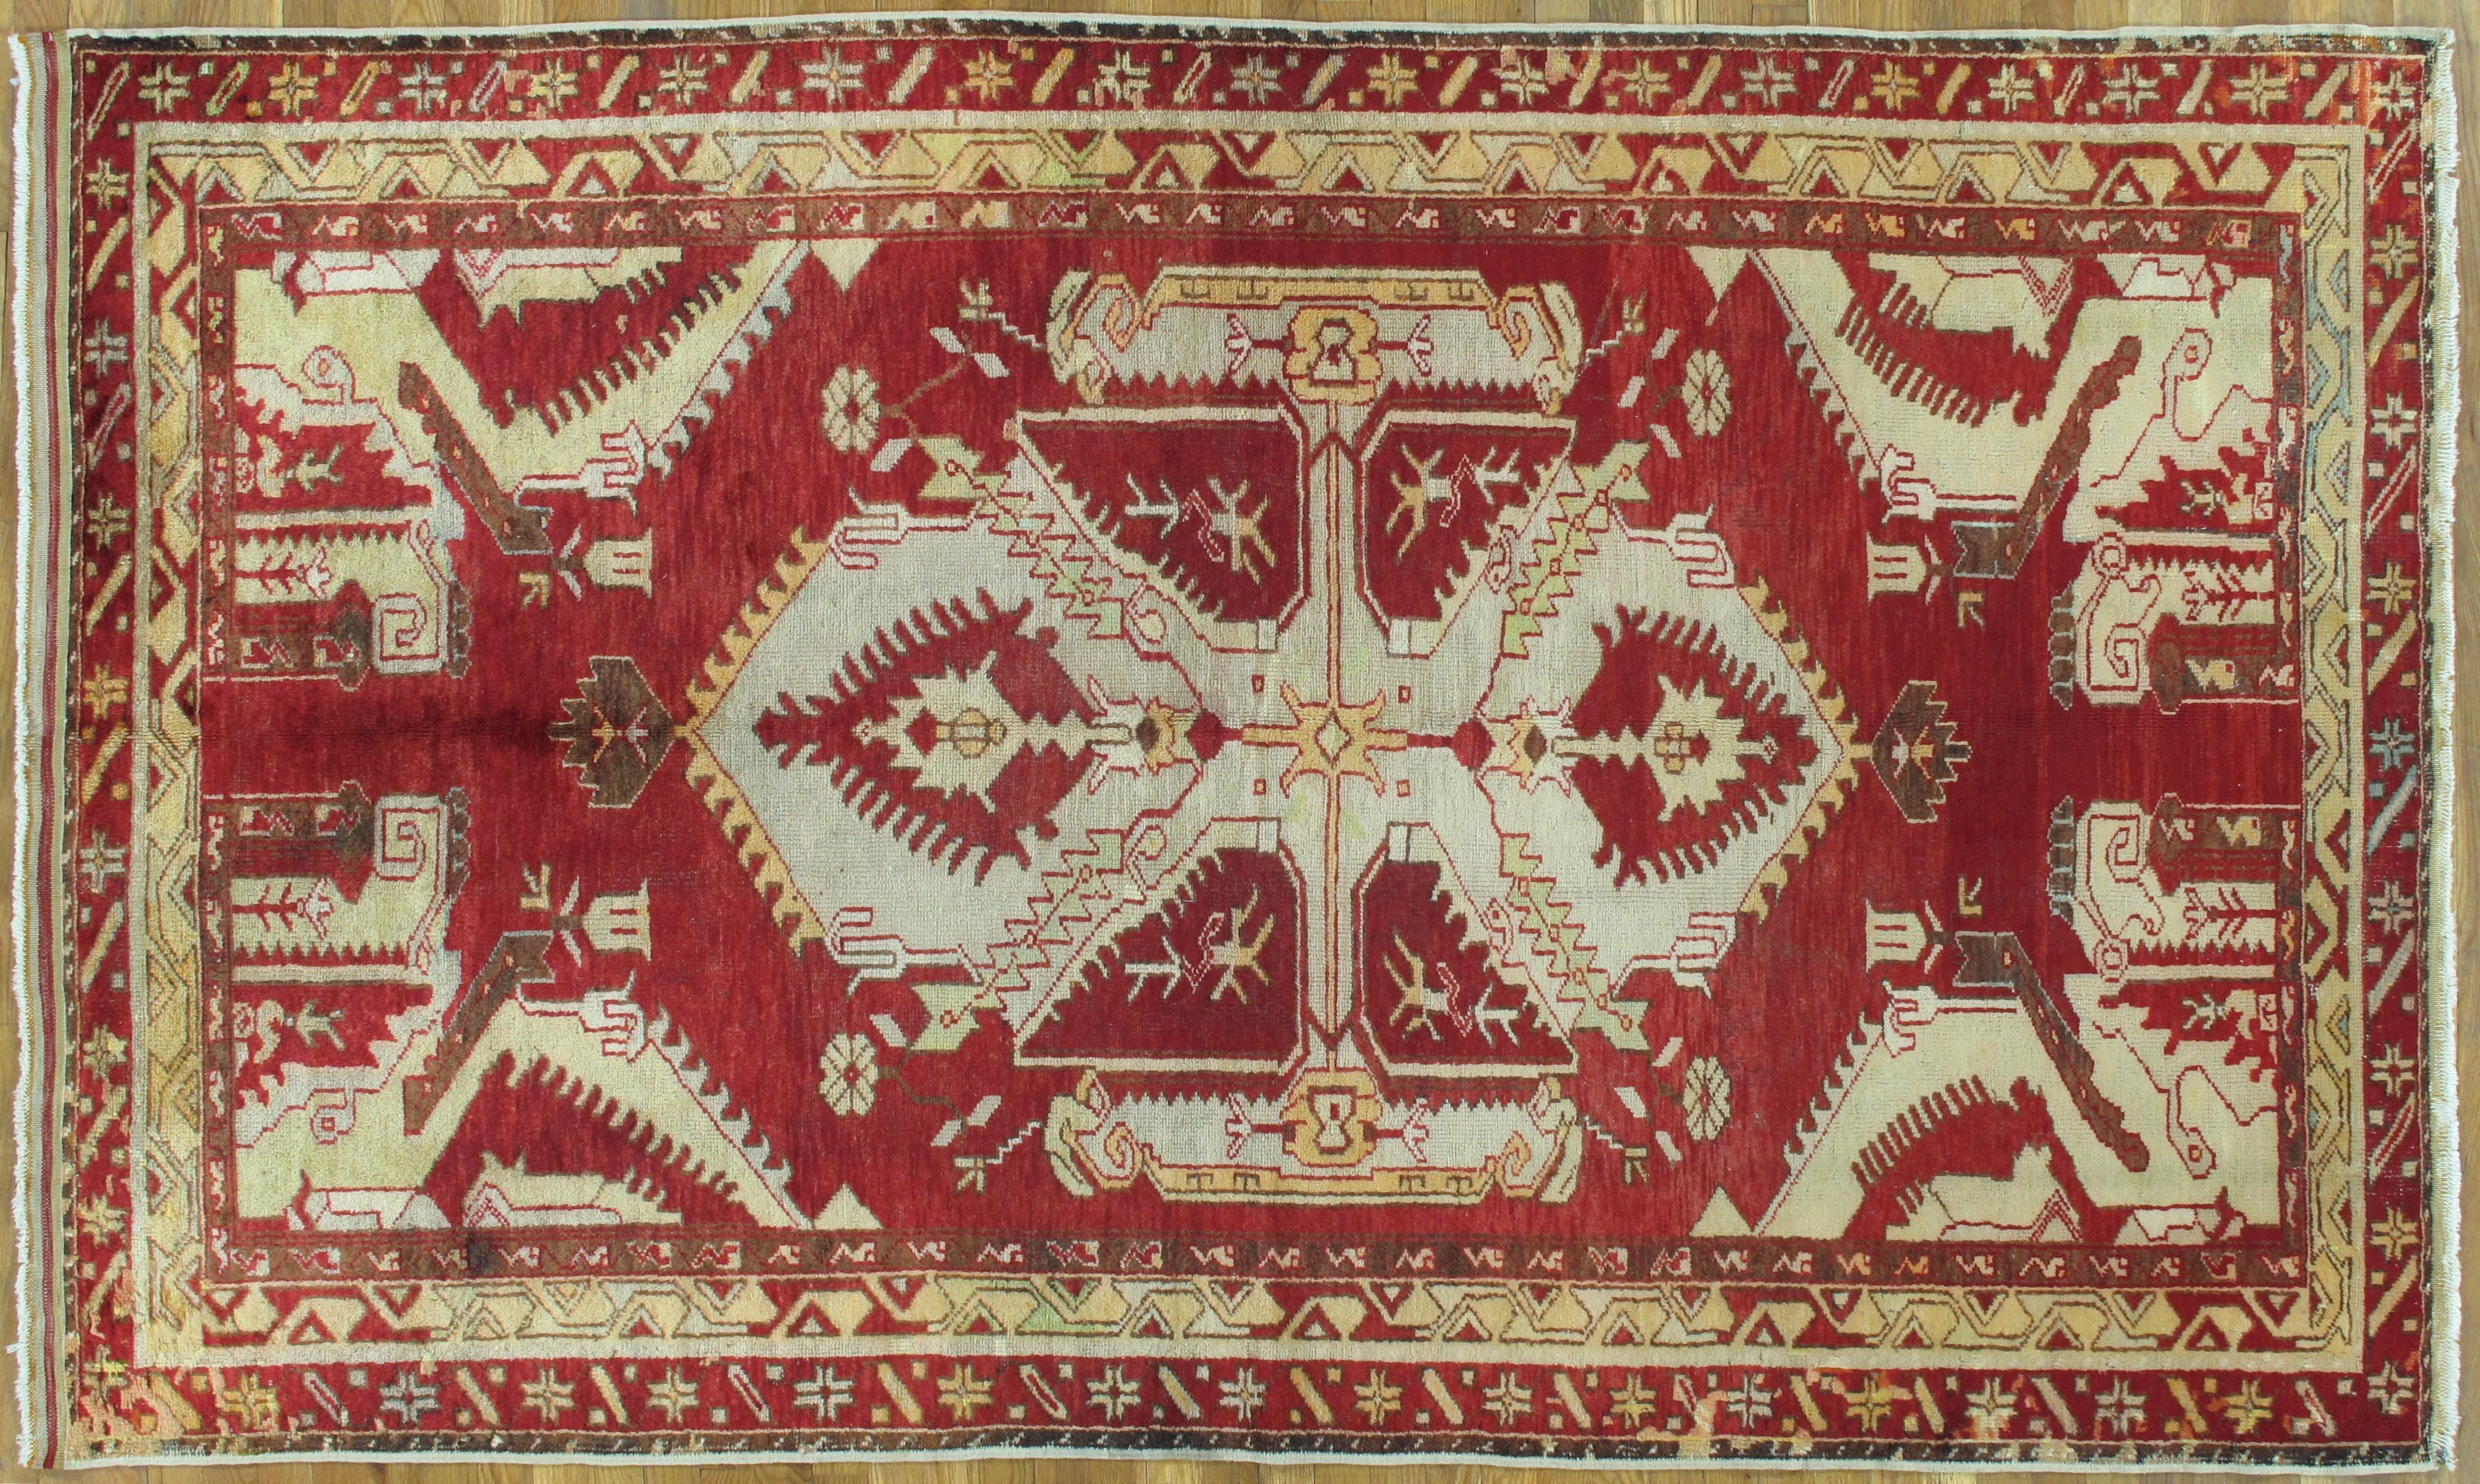 Antike türkische Oushak-Teppiche aus dem späten 19. Jahrhundert sind bekannt für ihre exquisite Handwerkskunst, ihre komplizierten Muster und ihre atemberaubenden Farbpaletten. Diese Teppiche wurden in der Region Oushak in der Türkei handgeknüpft,